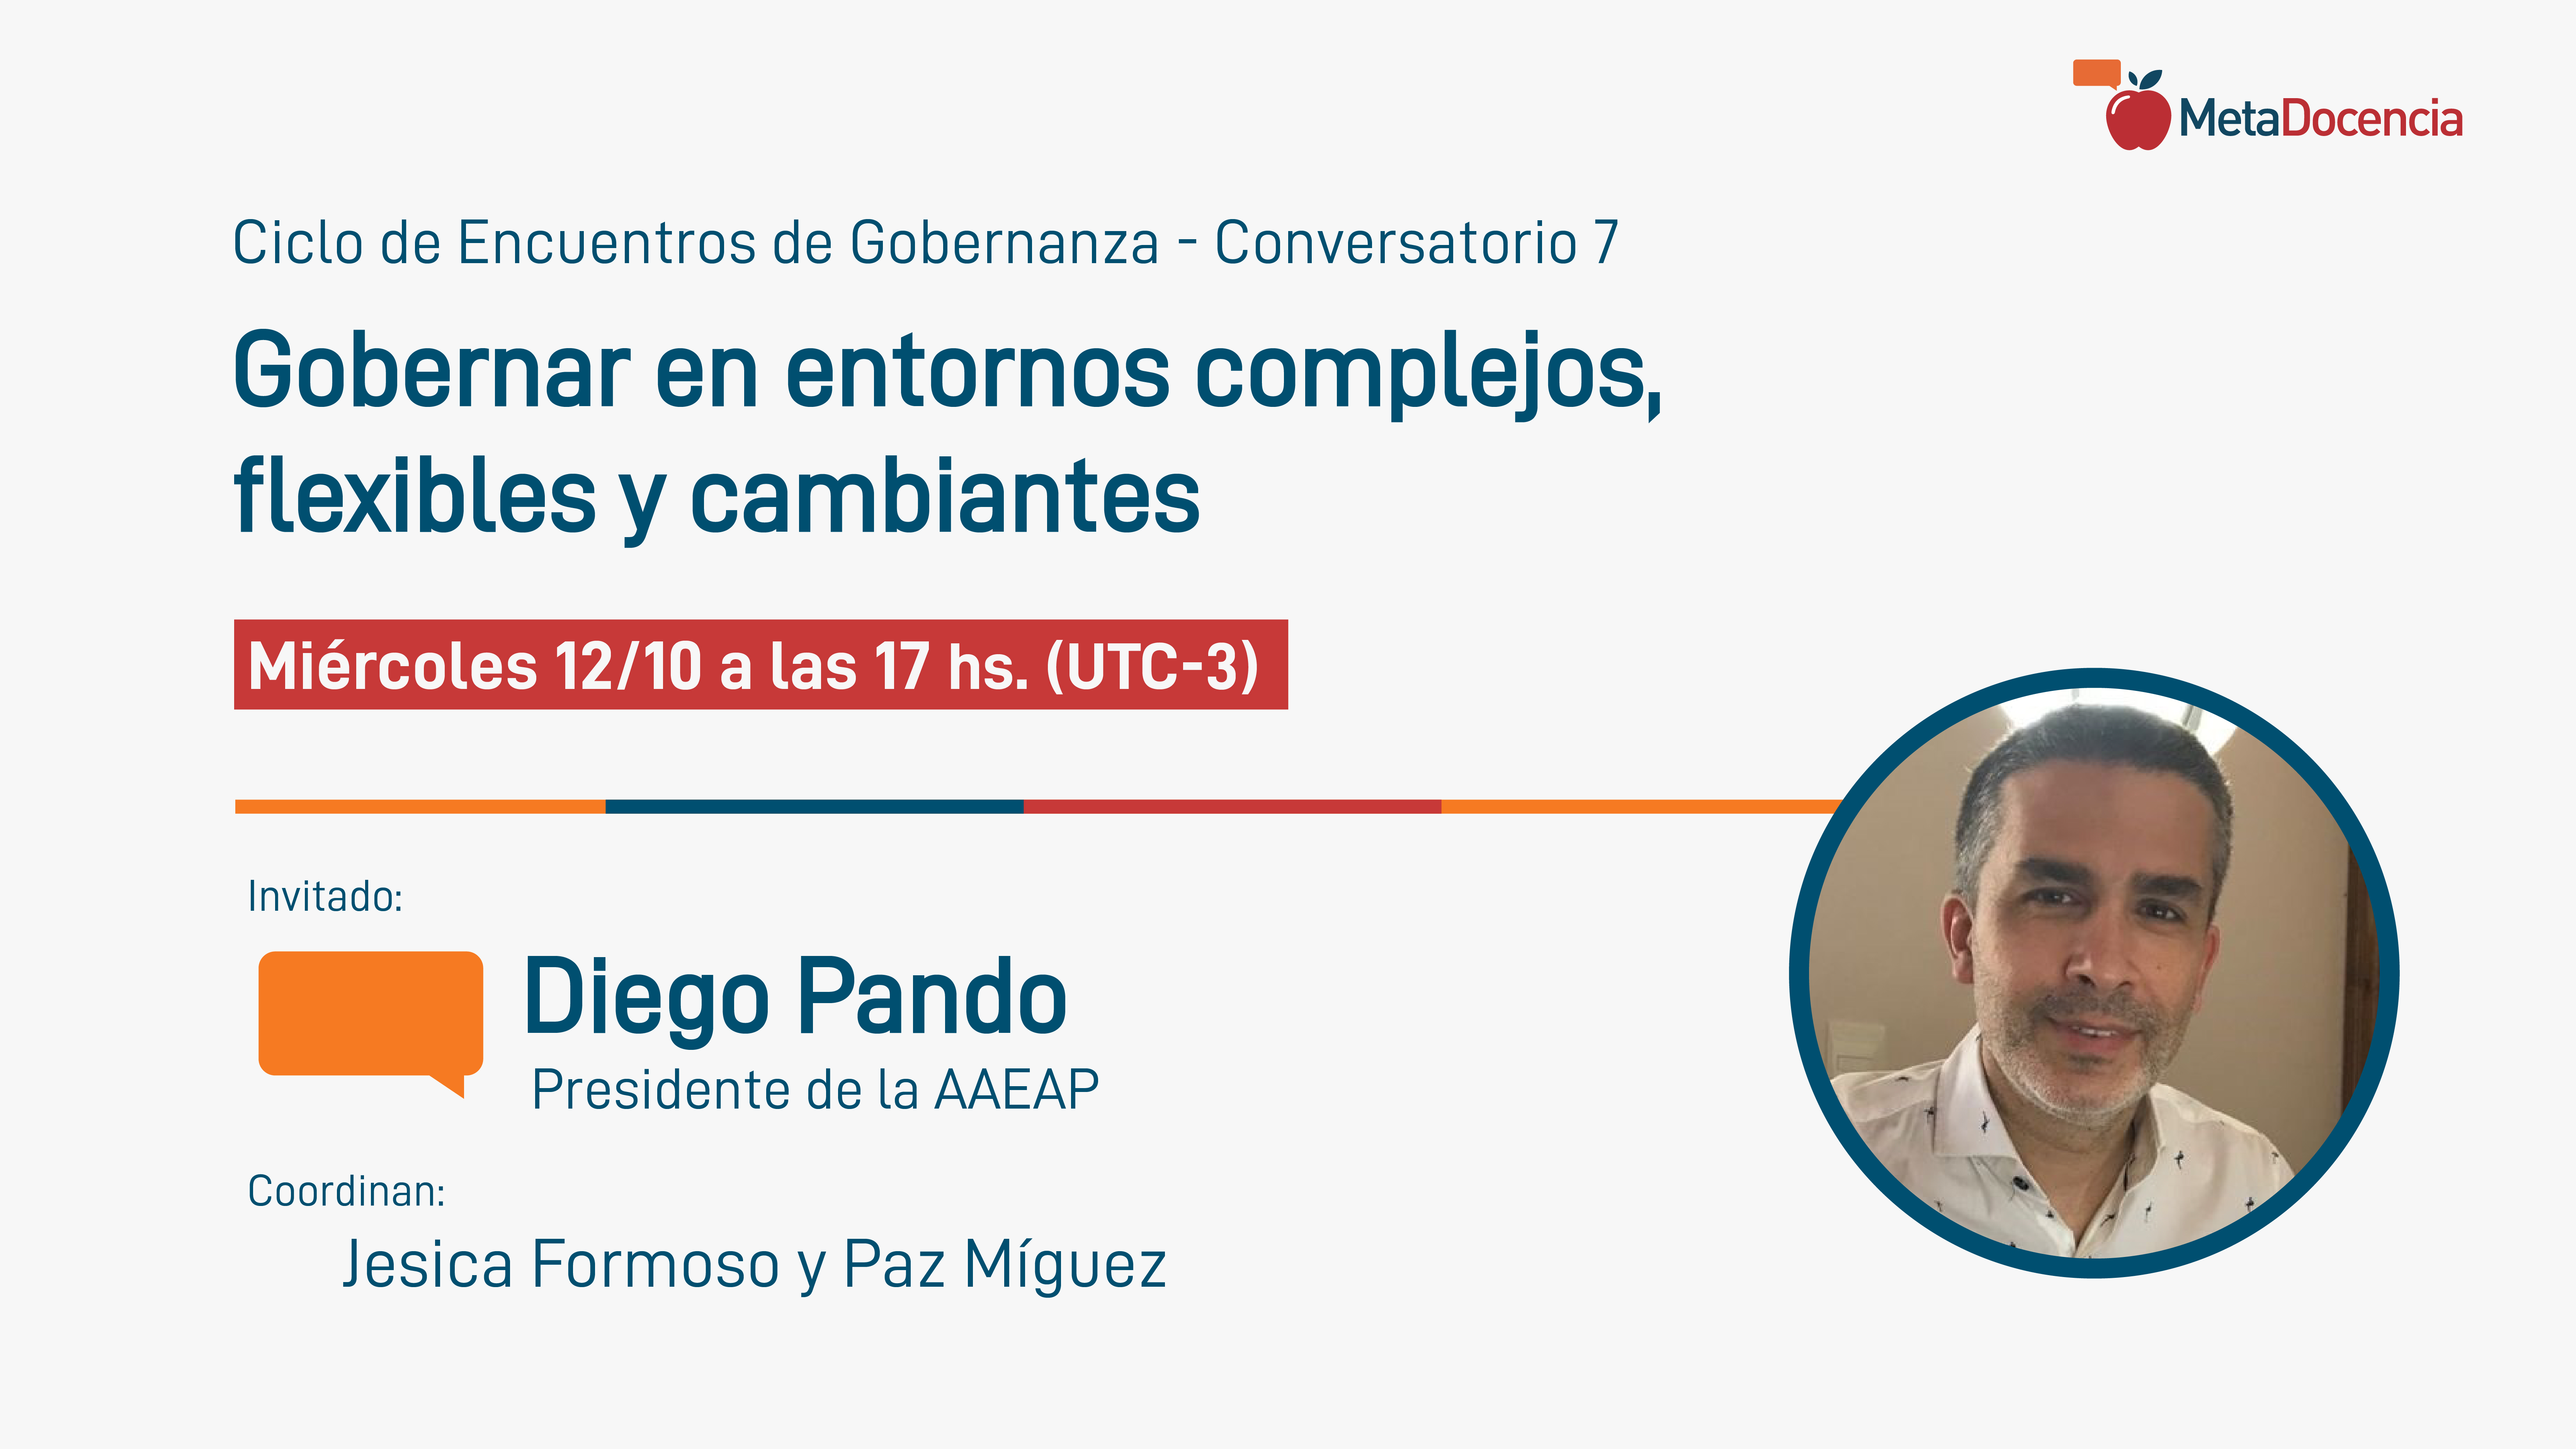 Ciclo de Encuentros de Gobernanza, Conversatorio 7. Diego Pando - Gobernar en entornos complejos, flexibles y cambiantes. Miércoles 12/10 a las 17 hs. (UTC-3)